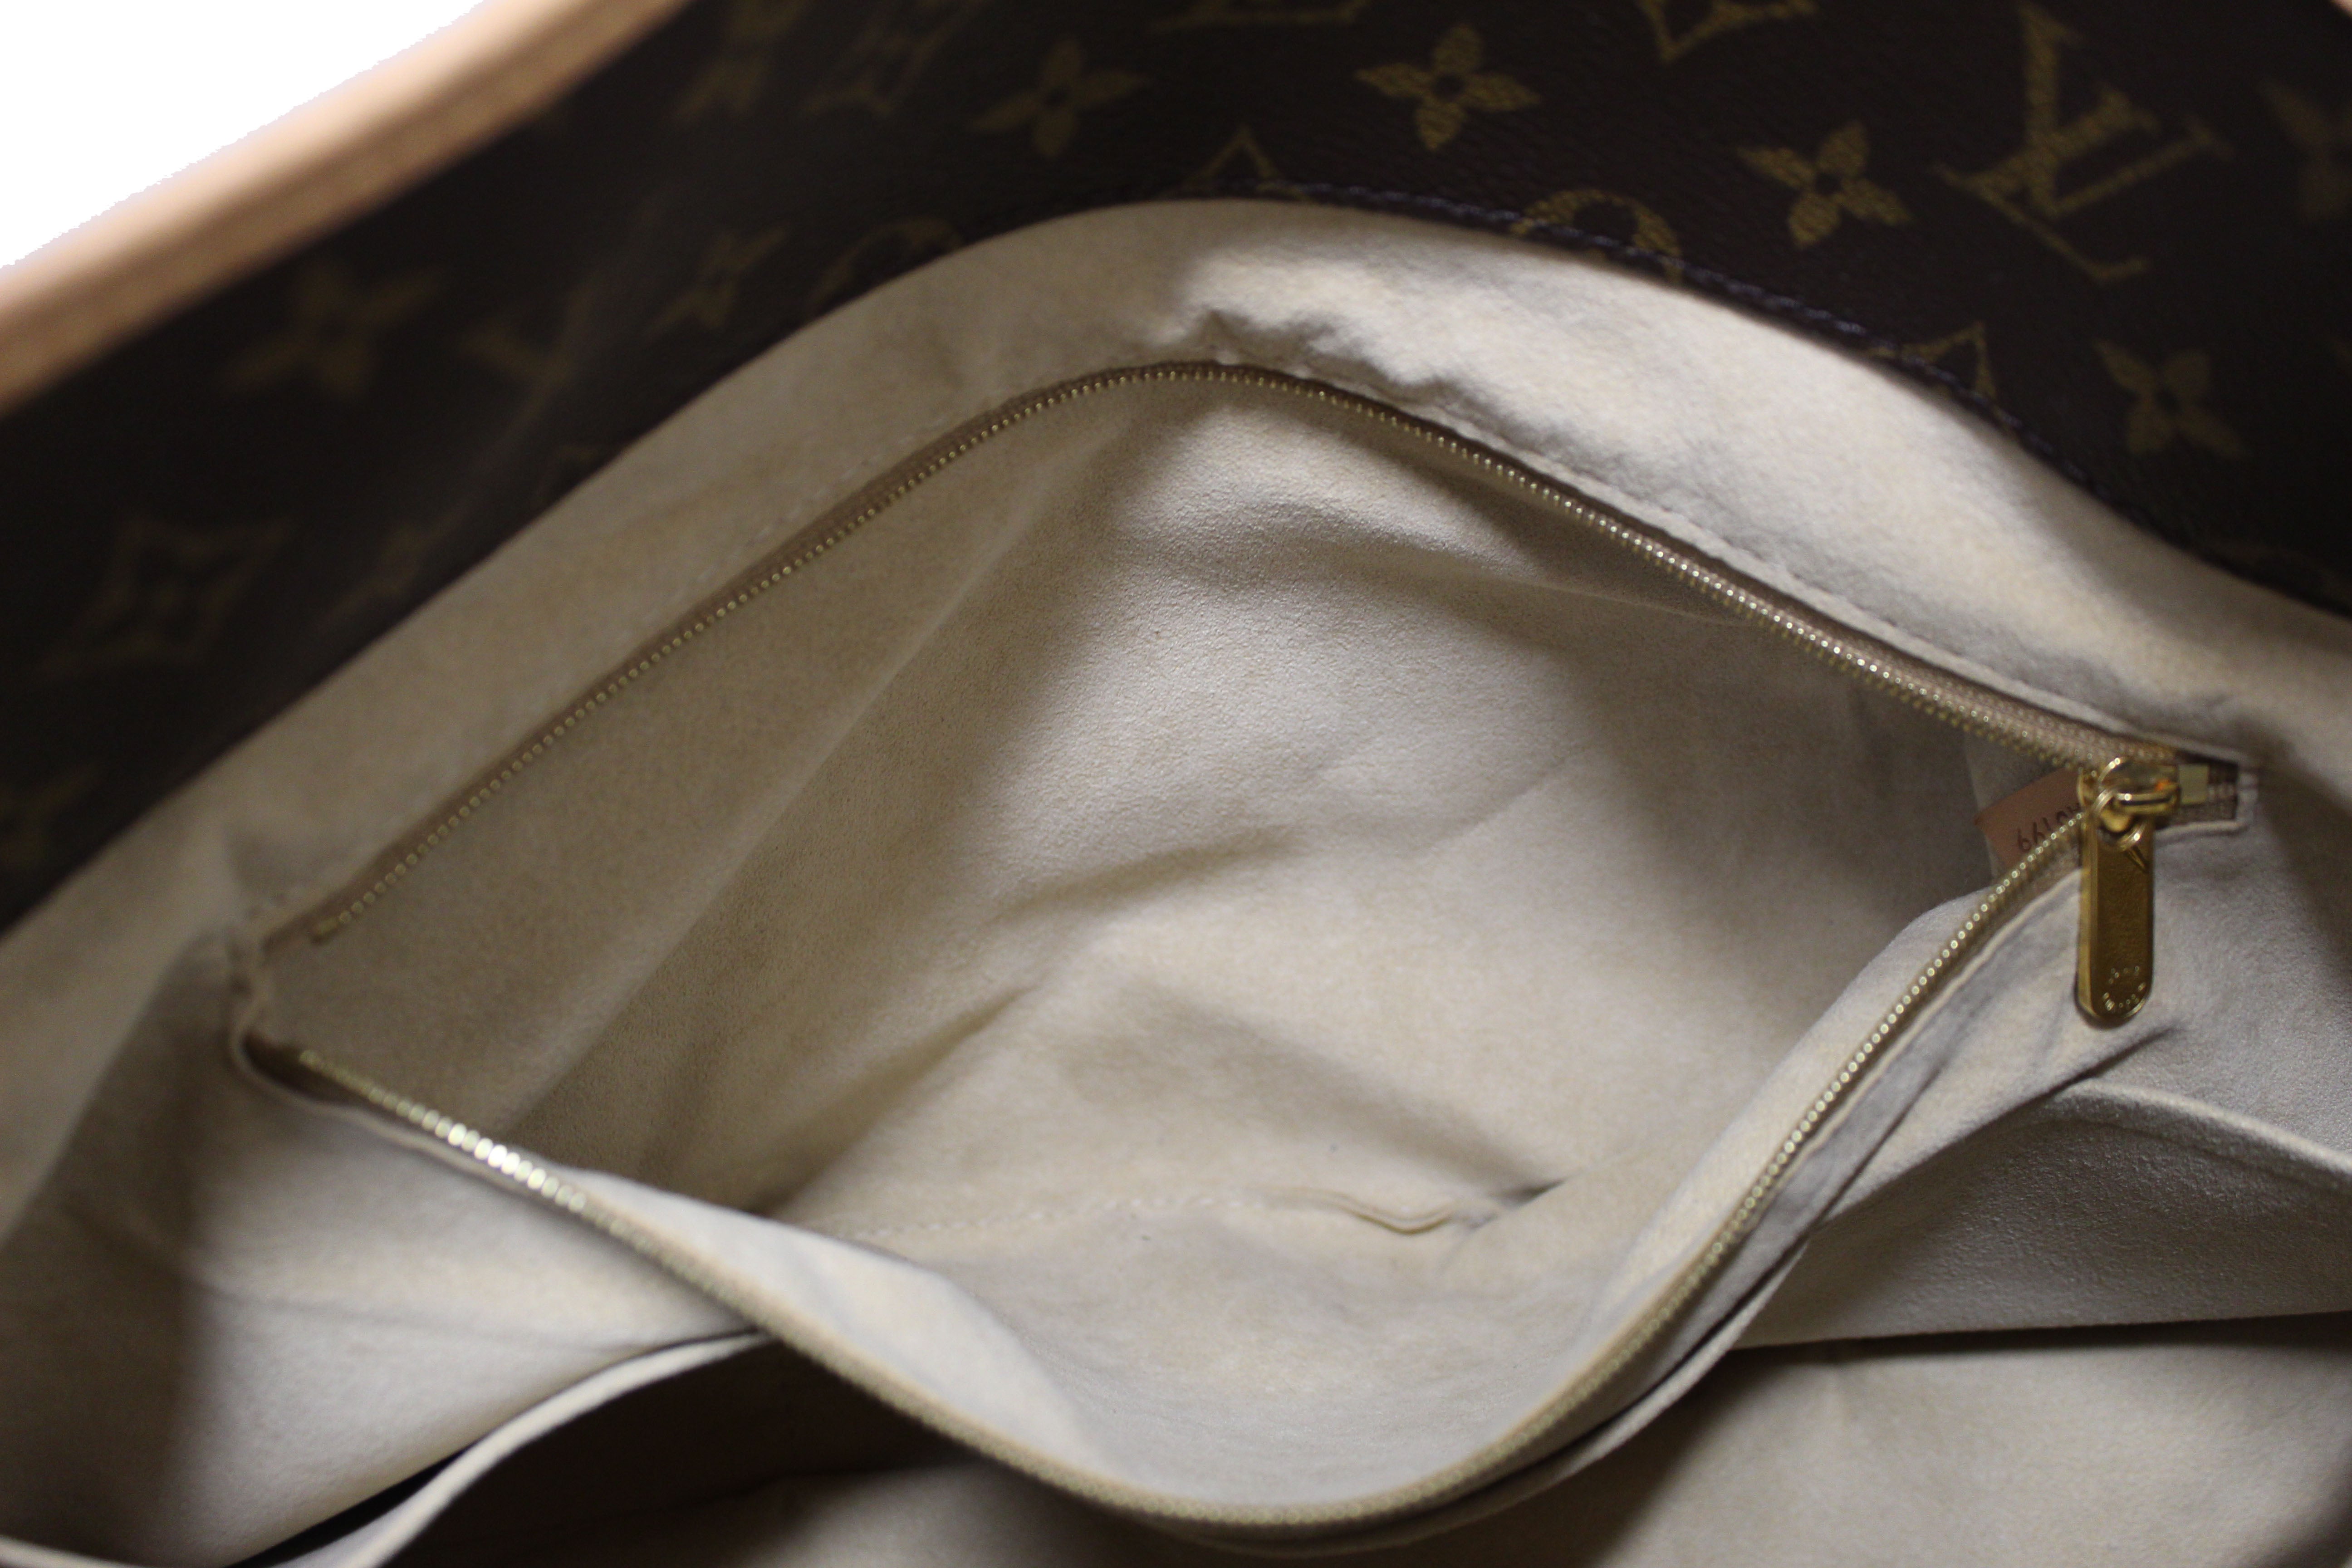 Louis Vuitton Monogram Canvas Artsy Handbag